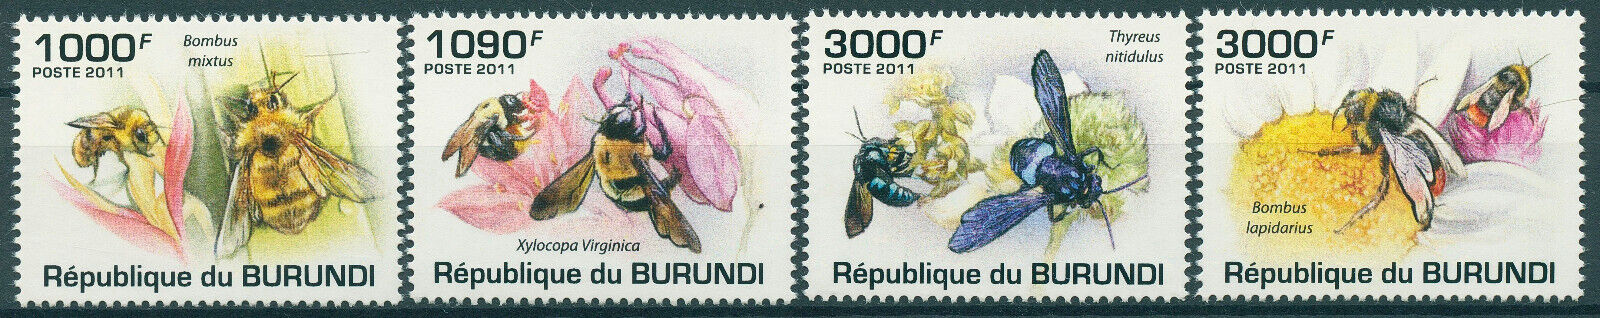 Burundi 2011 MNH Bees Stamps Eastern Carpenter Cuckoo Bee Bumblebee 4v Set